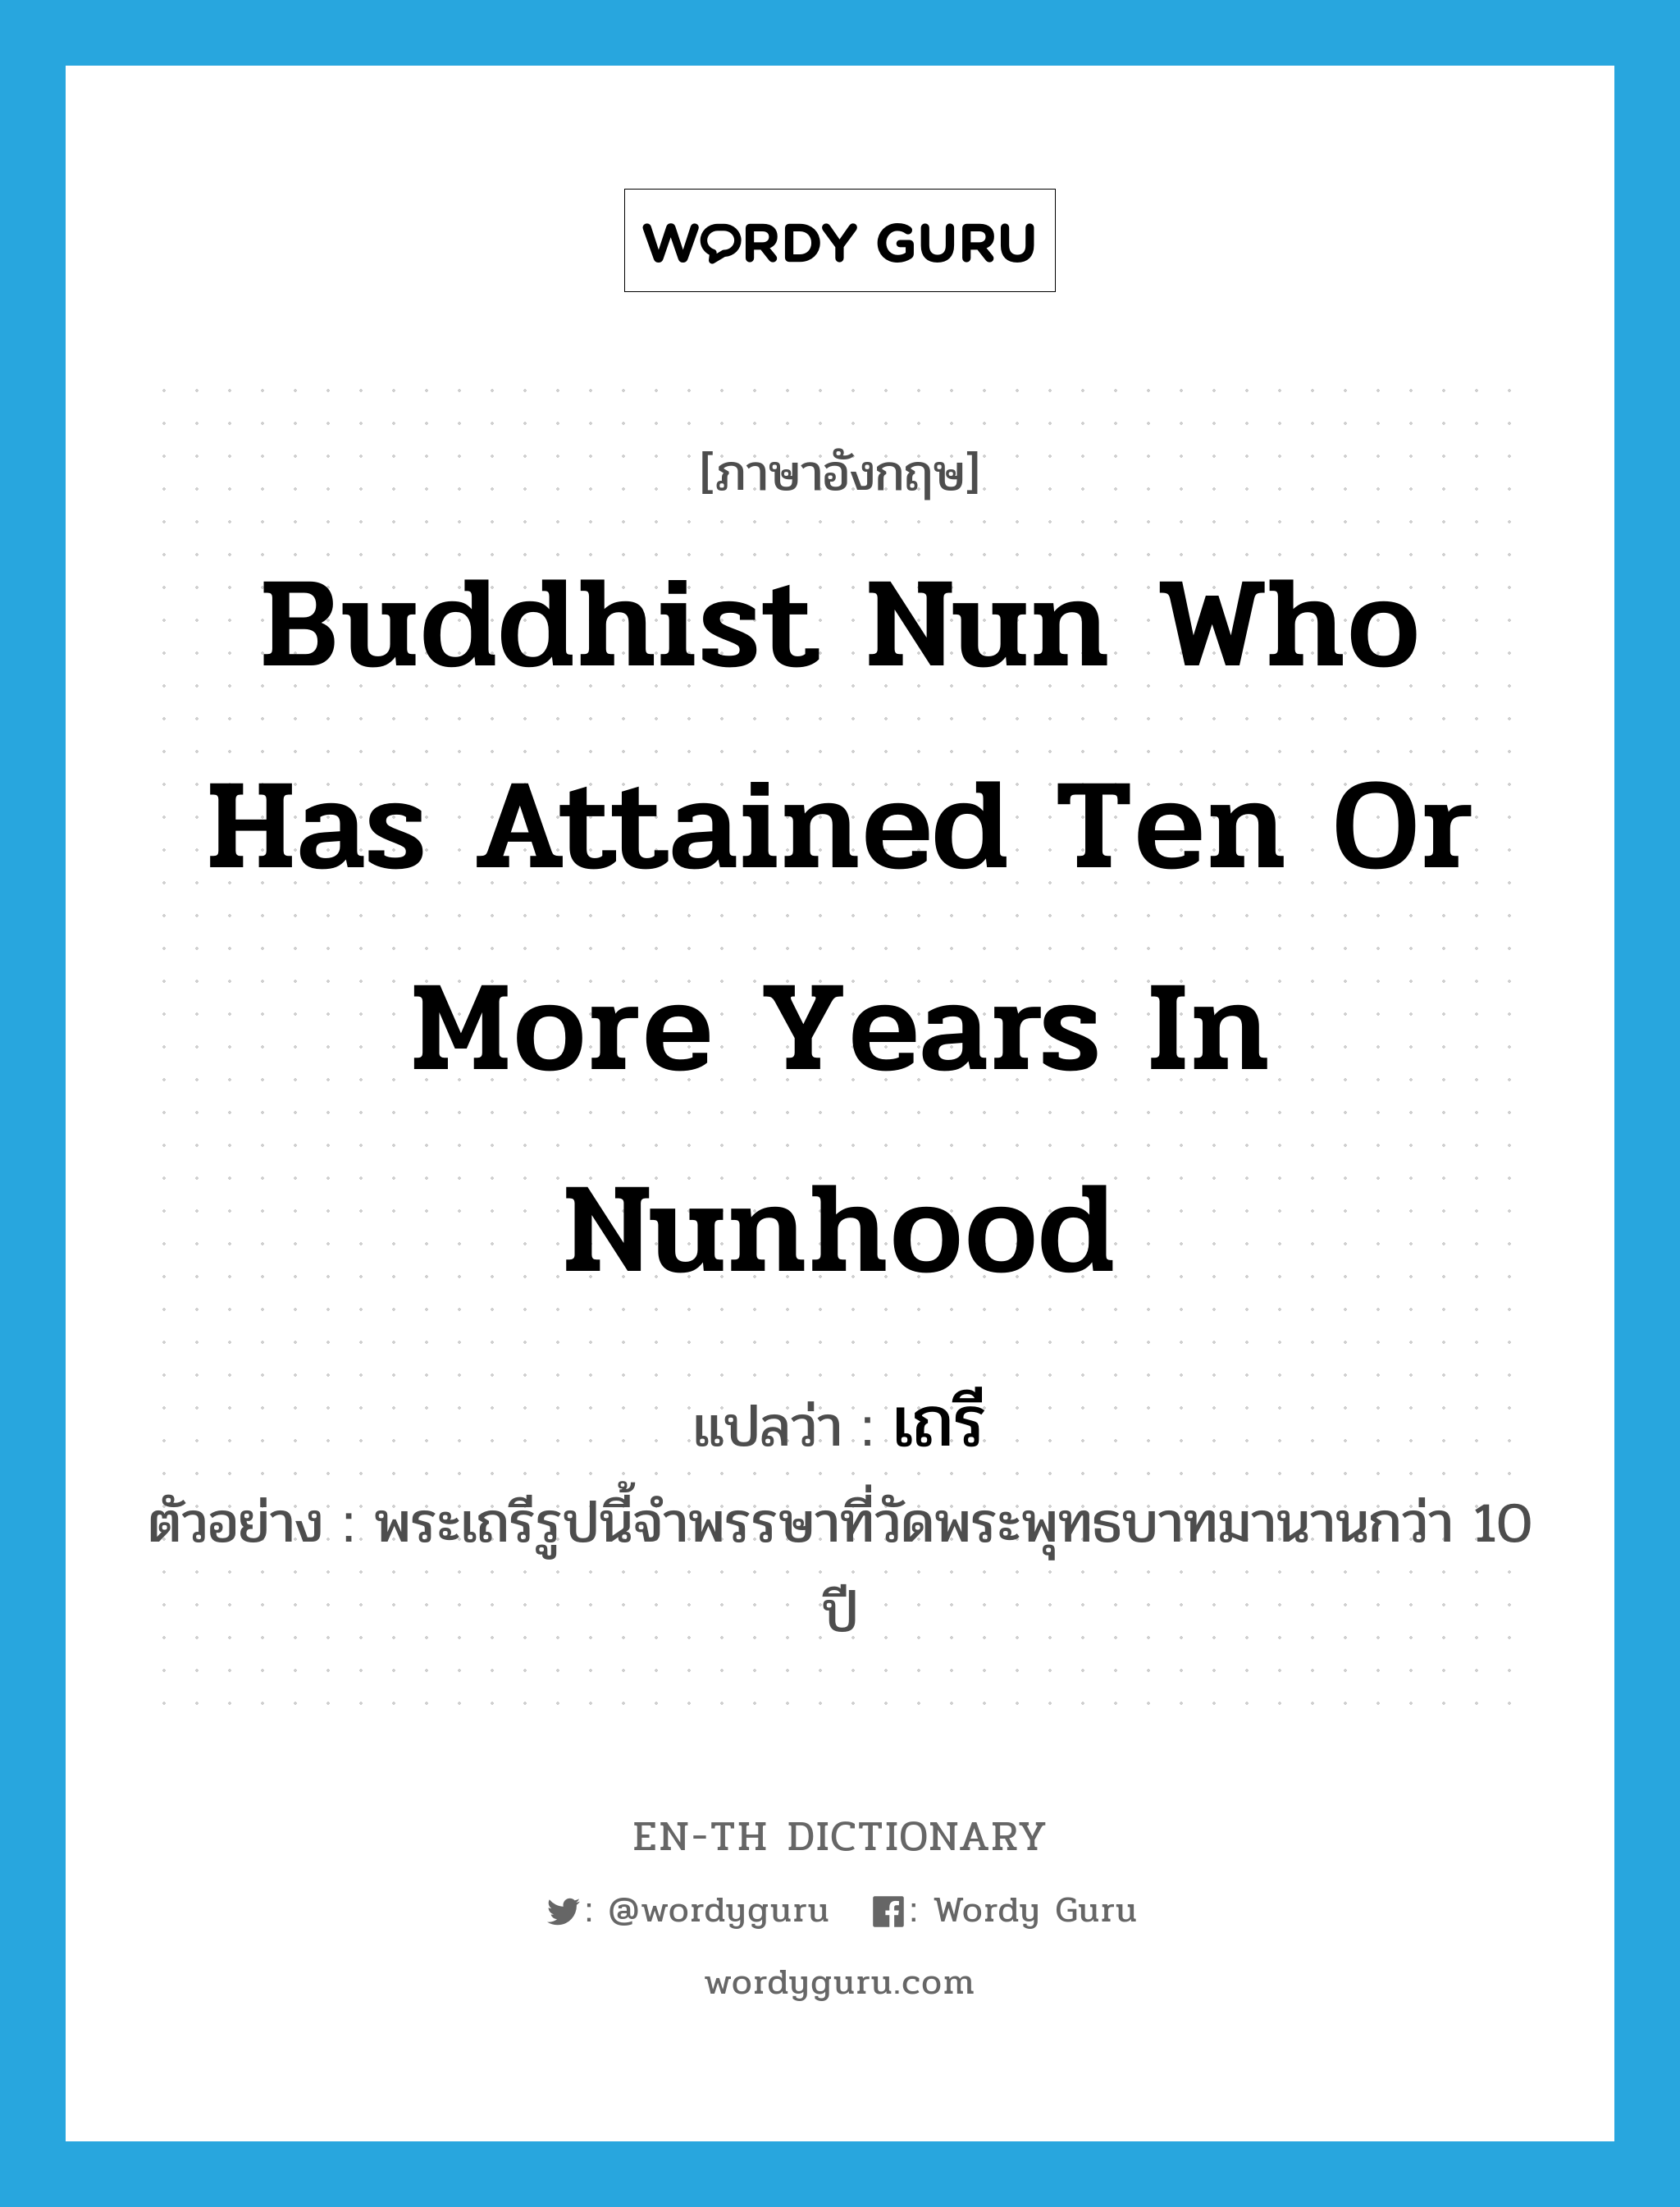 เถรี ภาษาอังกฤษ?, คำศัพท์ภาษาอังกฤษ เถรี แปลว่า Buddhist nun who has attained ten or more years in nunhood ประเภท N ตัวอย่าง พระเถรีรูปนี้จำพรรษาที่วัดพระพุทธบาทมานานกว่า 10 ปี หมวด N